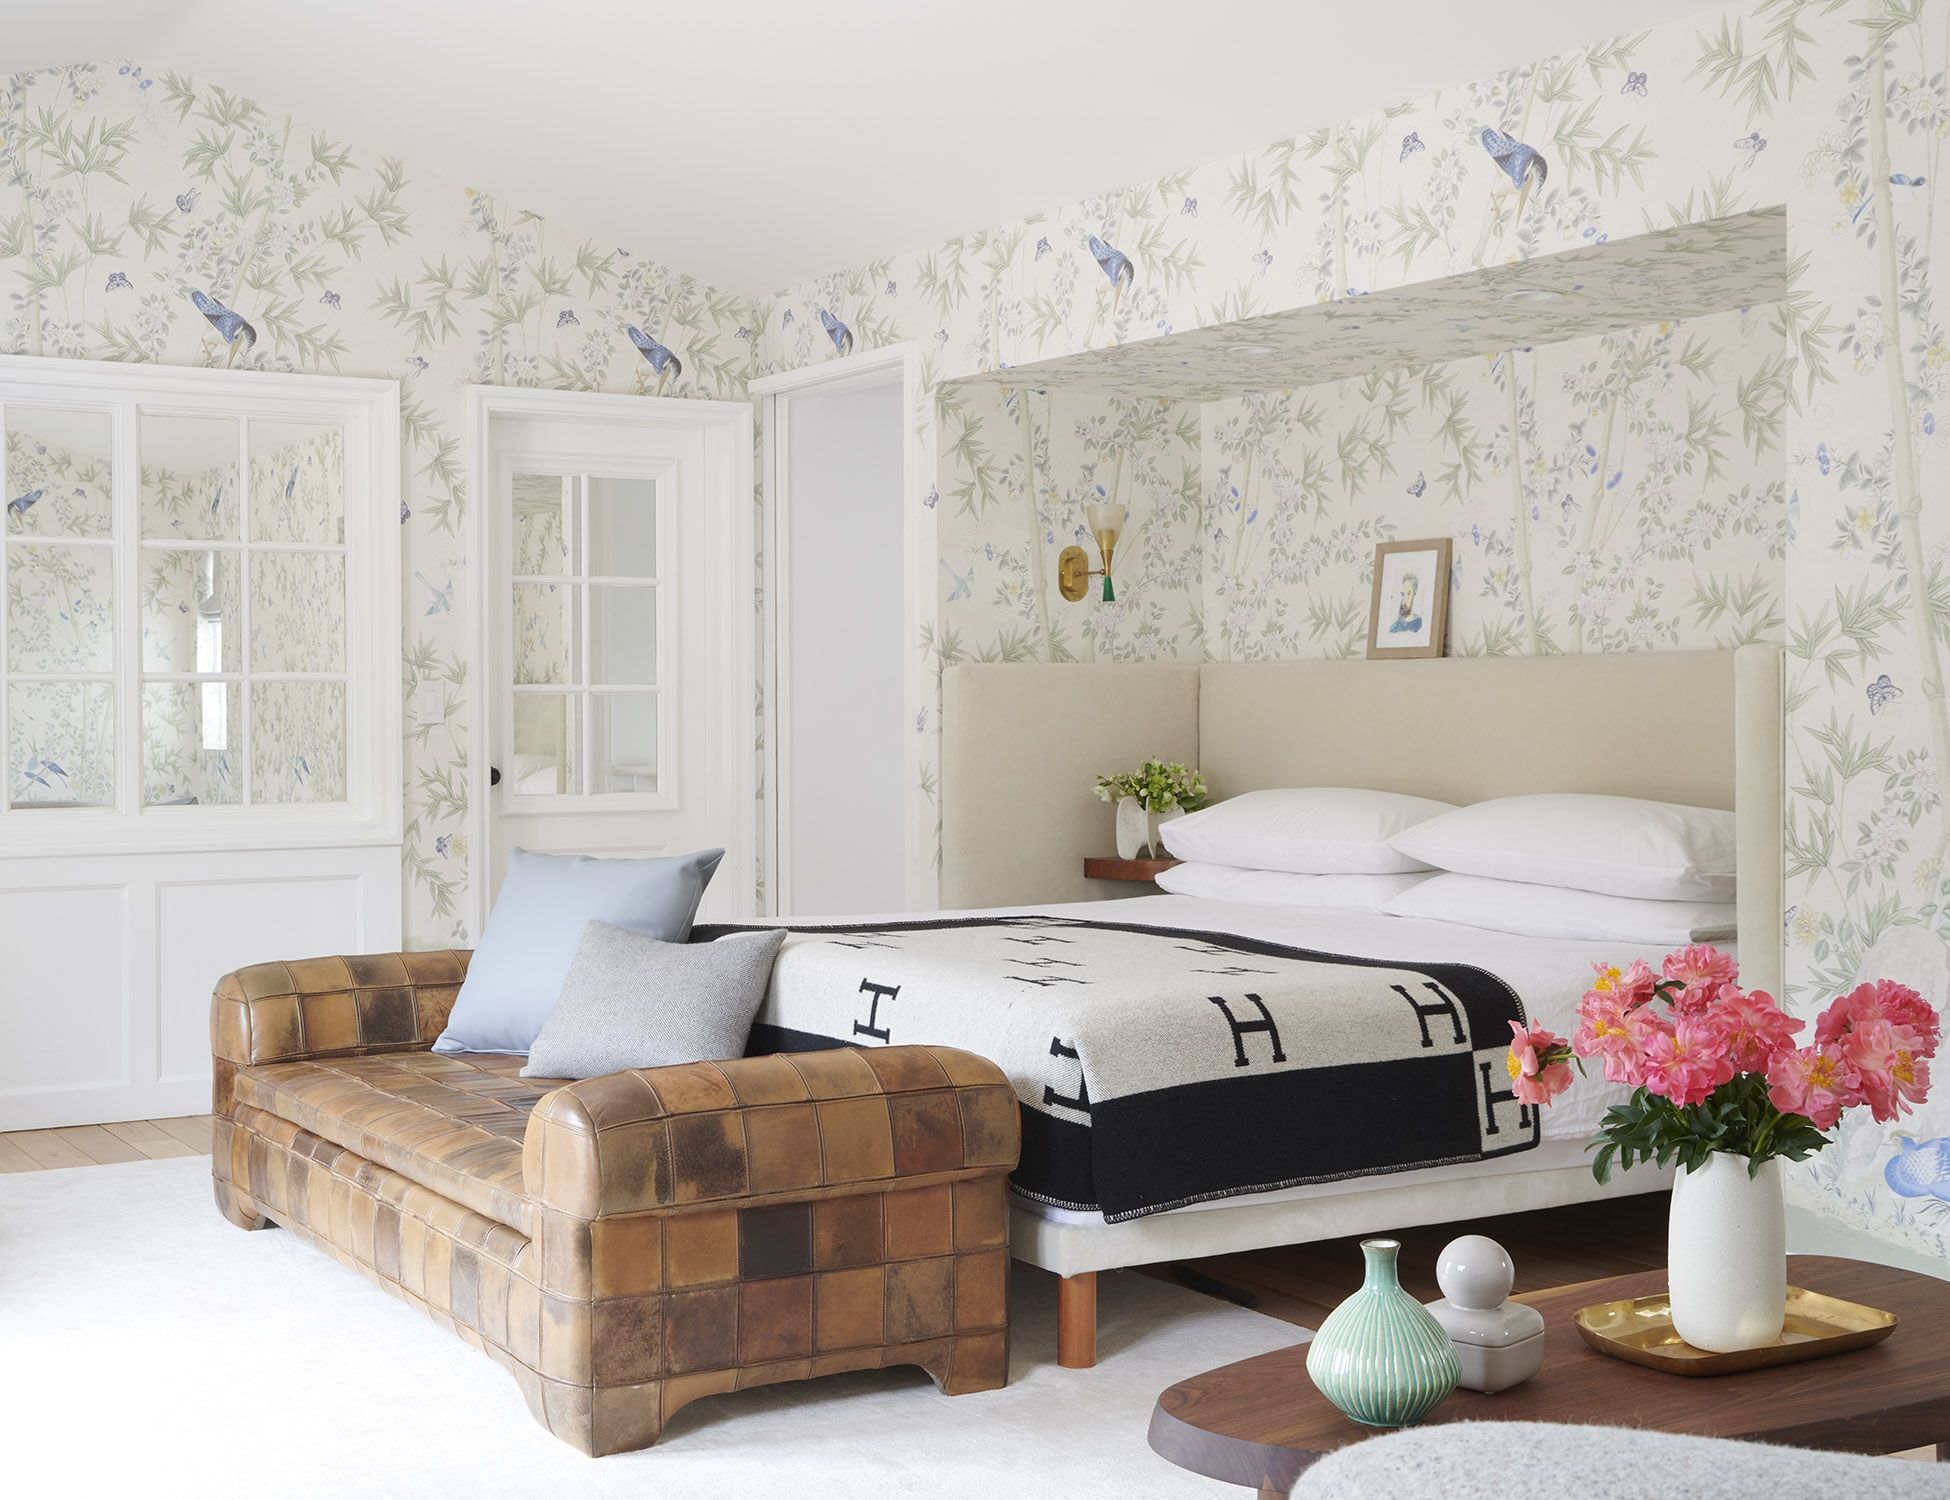 Interior Design Project Management Tips - Bedroom design by Brigette Romanek